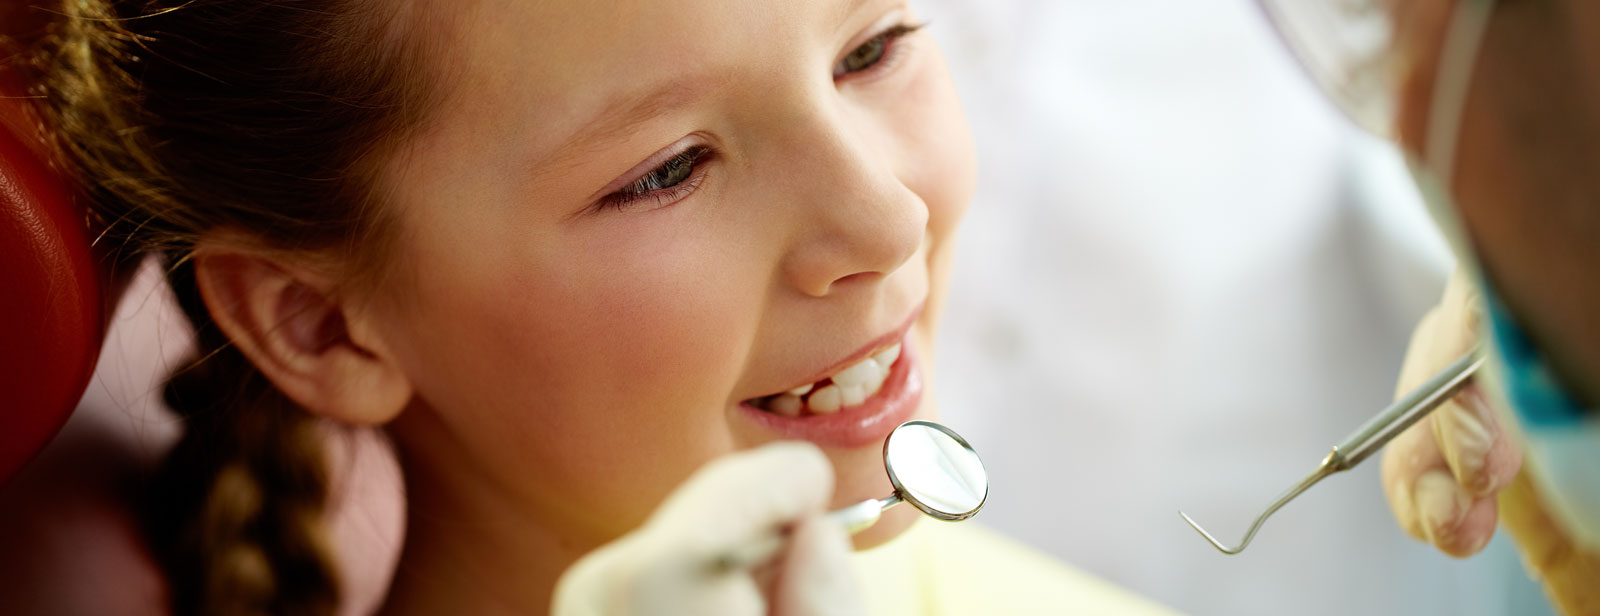 Kindvriendelijke behandeling bij angst voor de tandarts